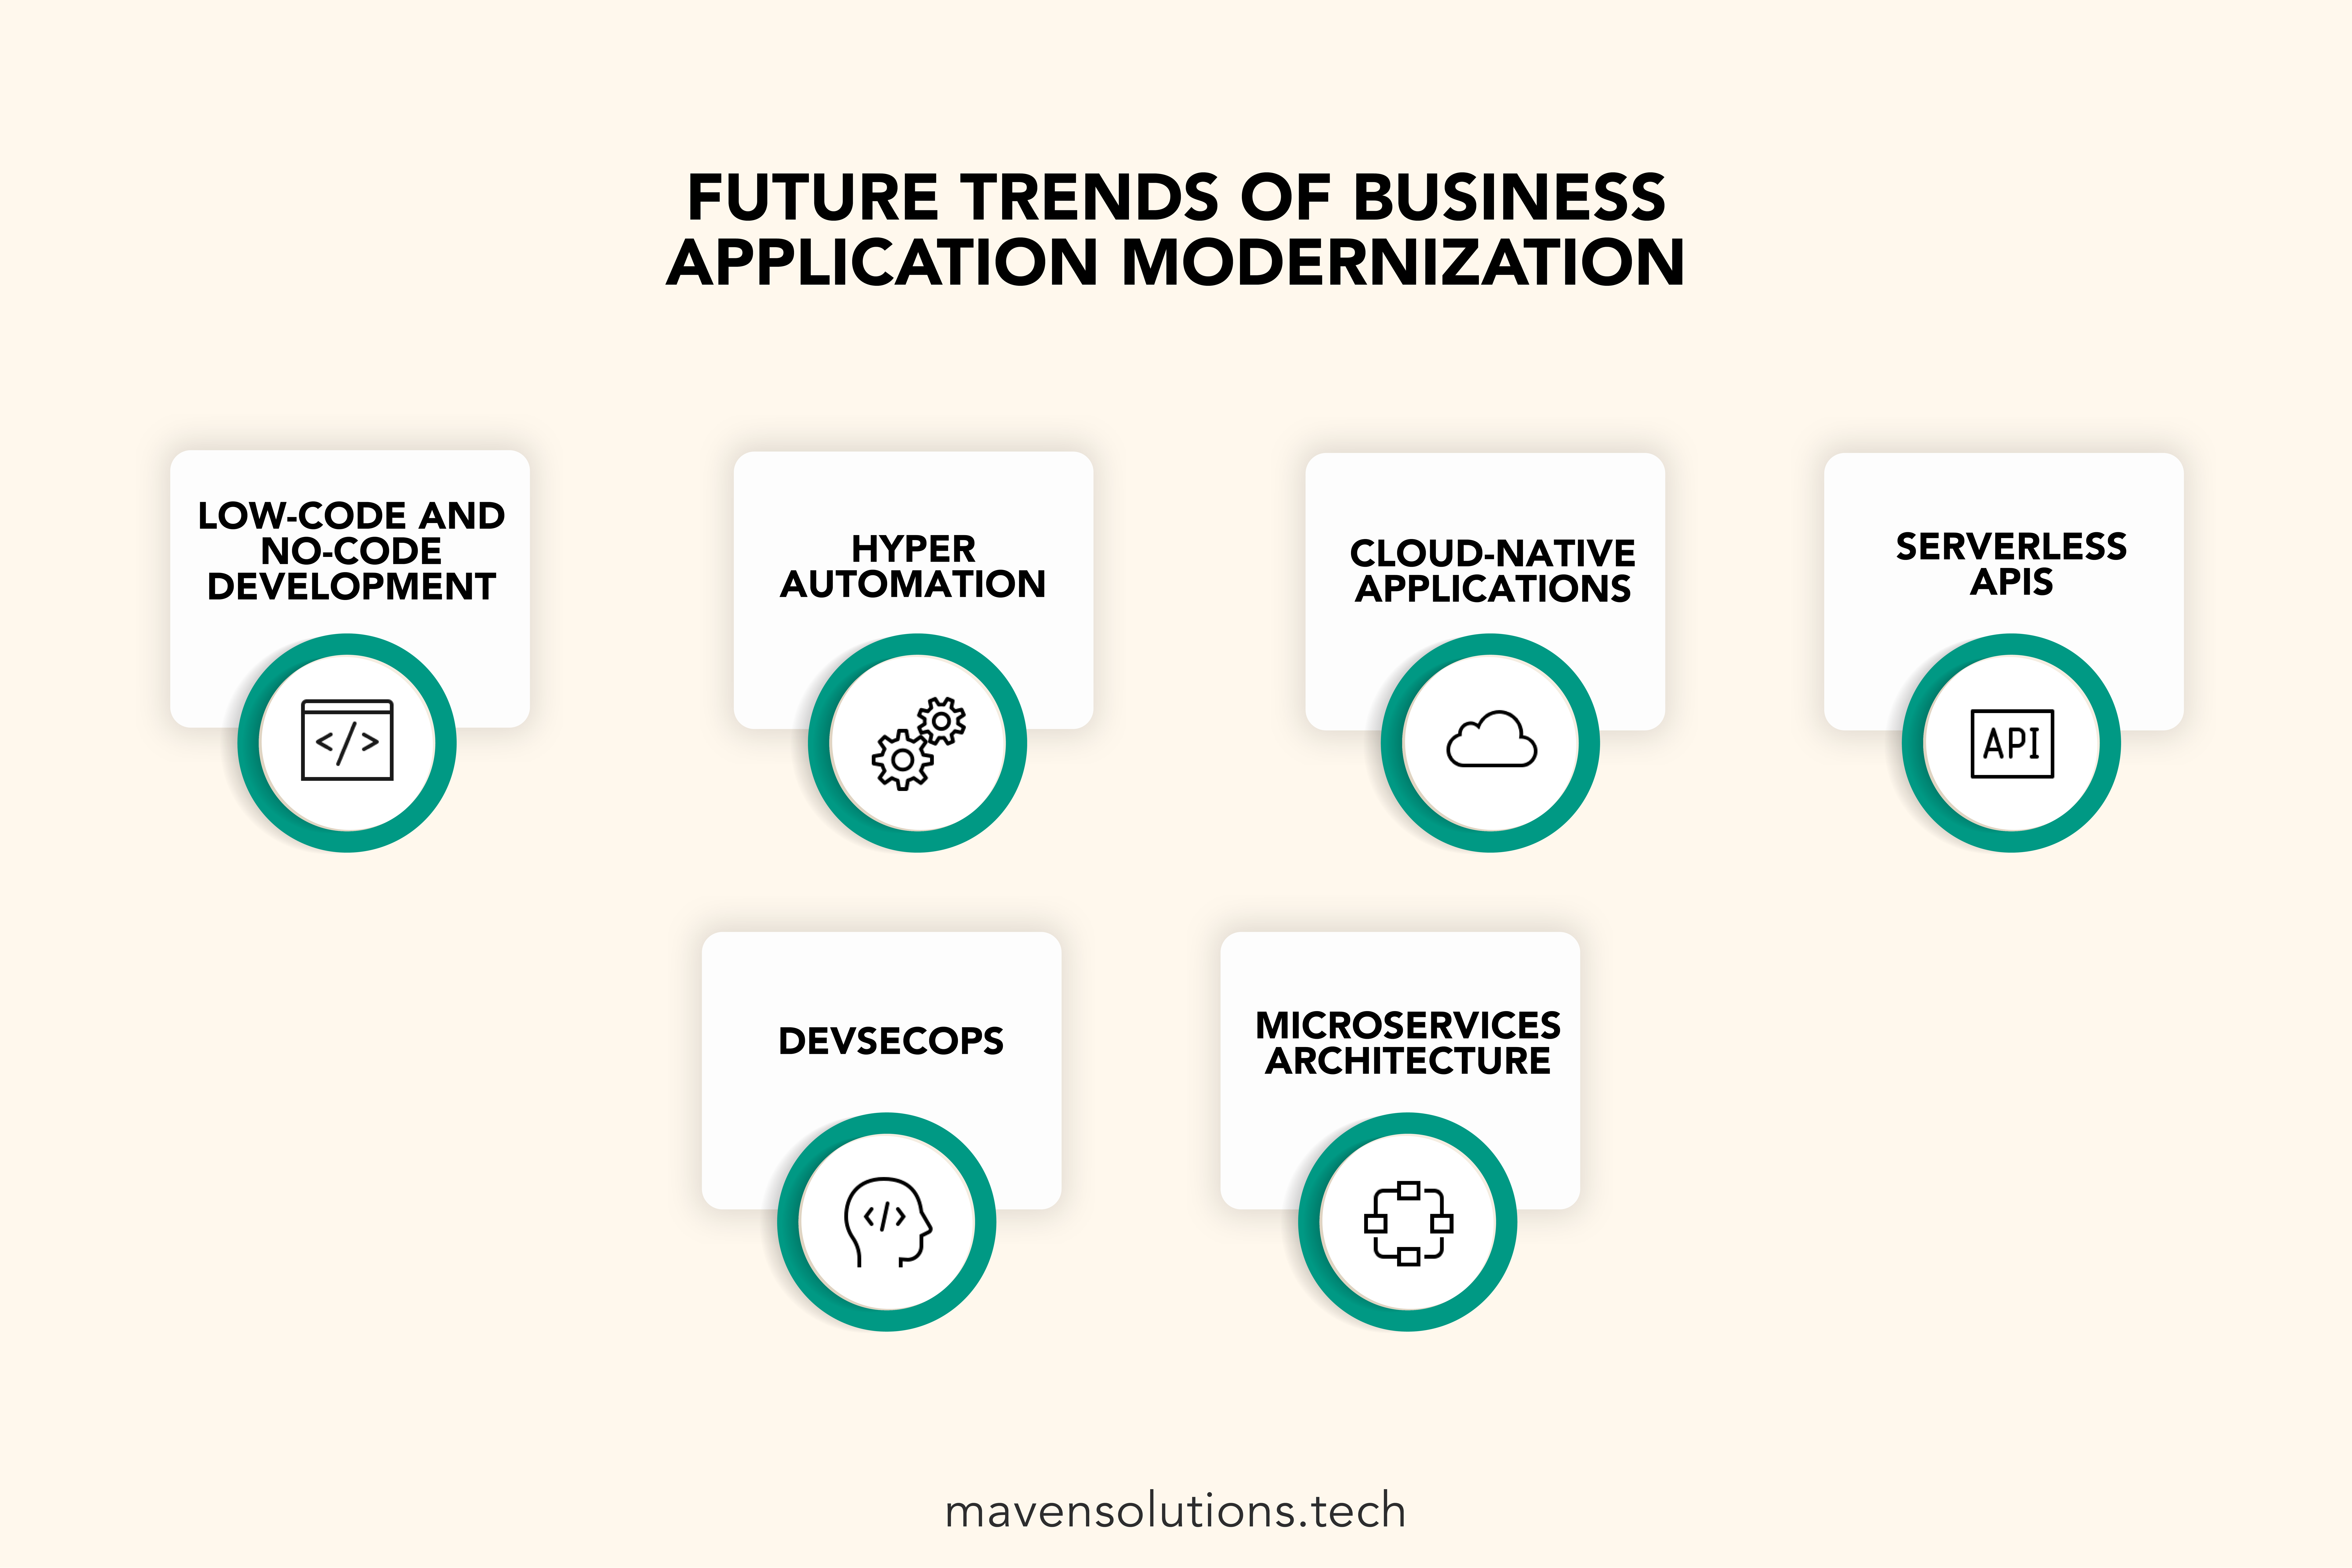 enterprise application modernization